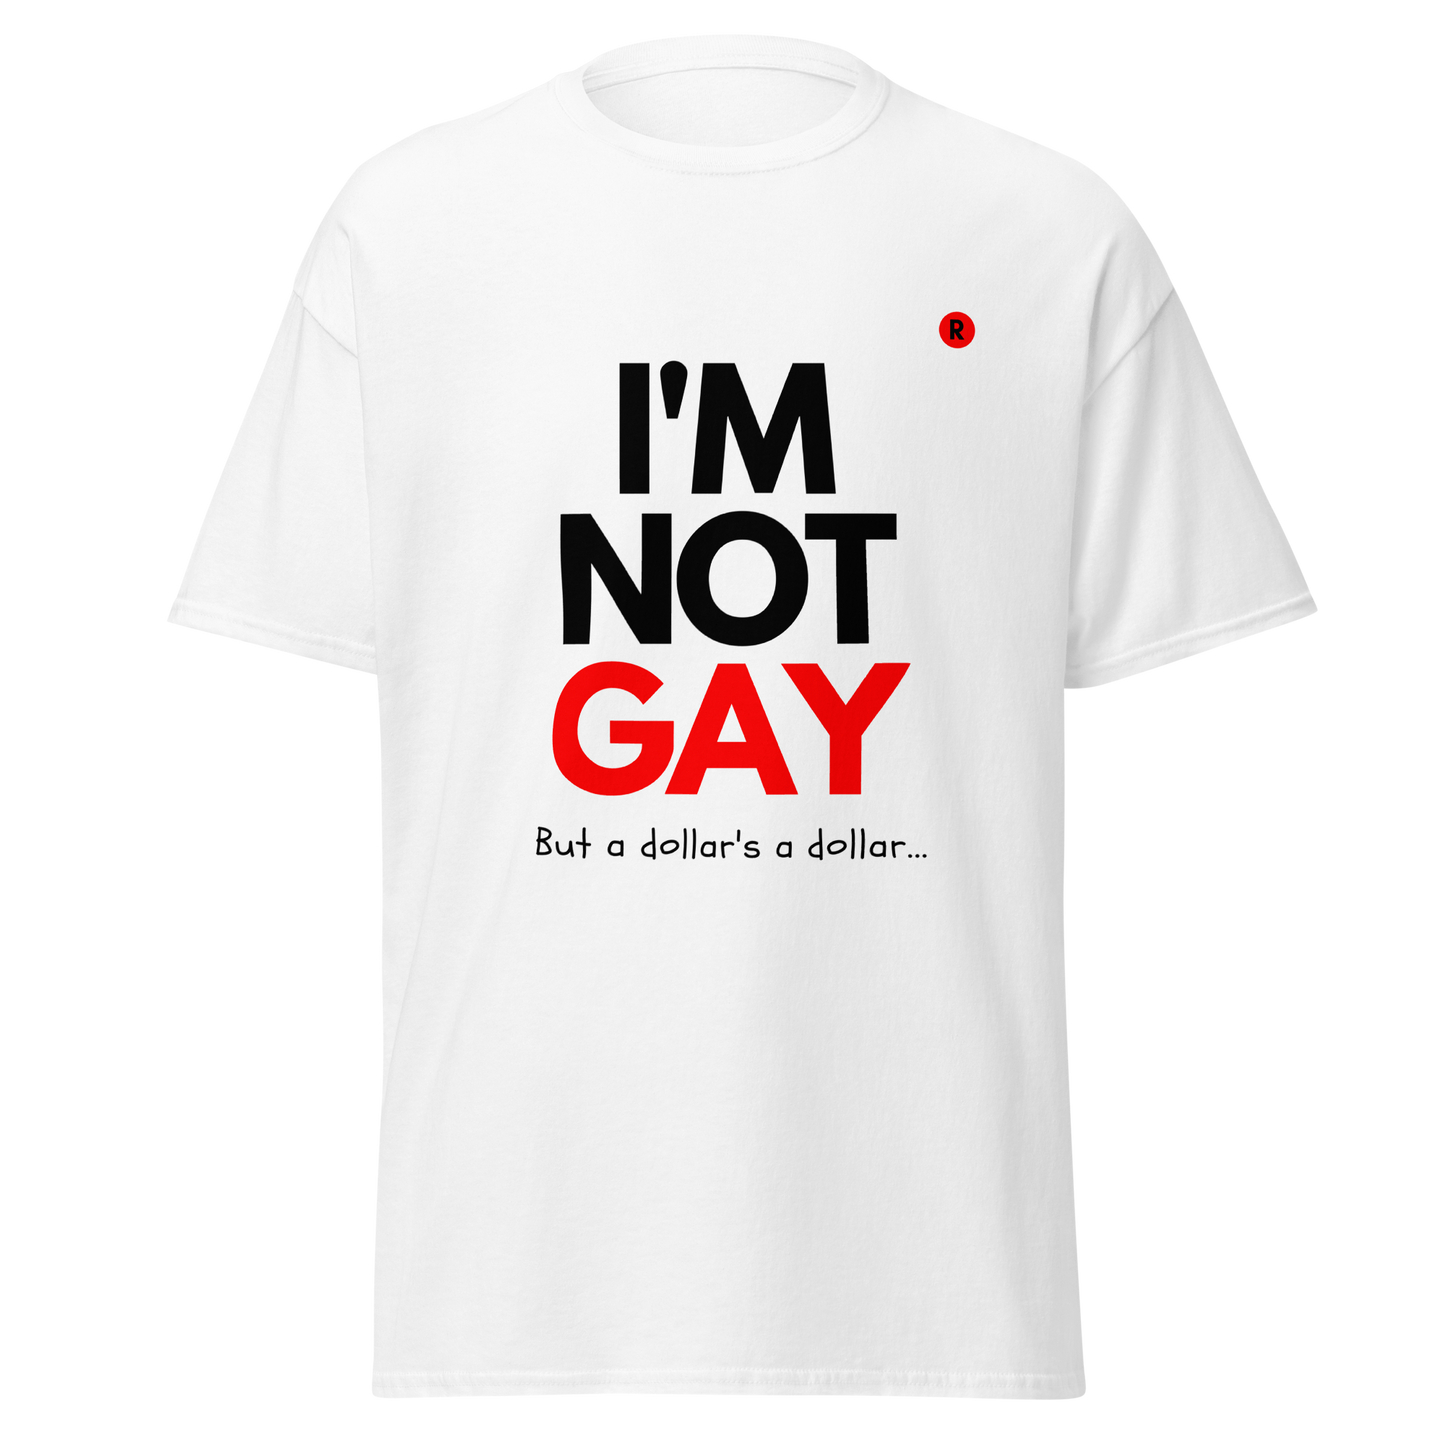 I'm Not Gay T-shirt